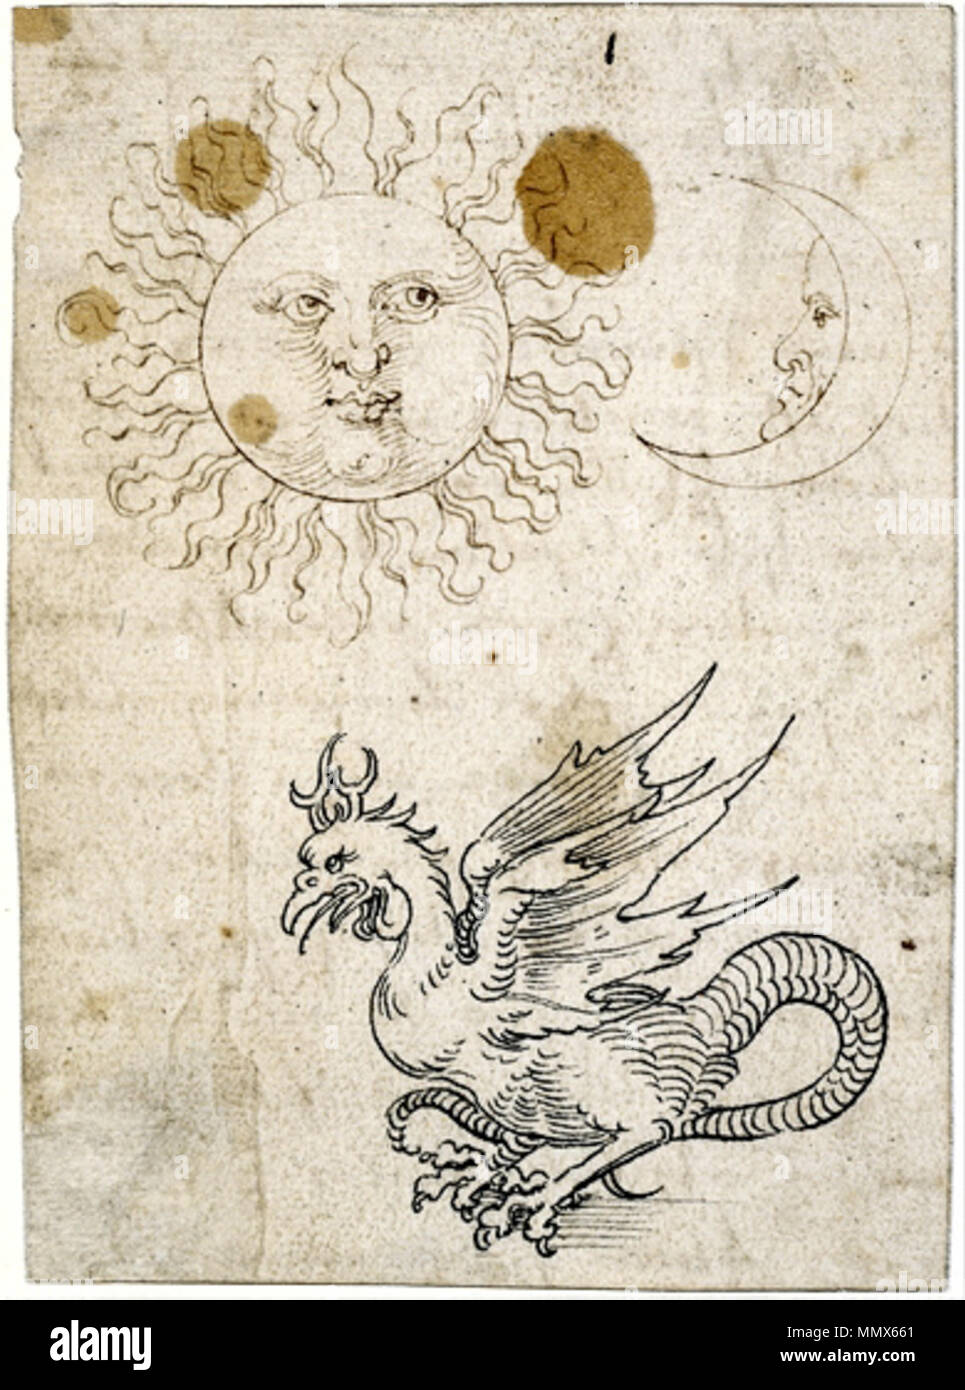 Anglais : Un dessin du soleil, de la lune et un basilic servant  d'illustration pour le concept de 'eternity'. Il est fait sur le dos d'un  manuscrit de la traduction de '